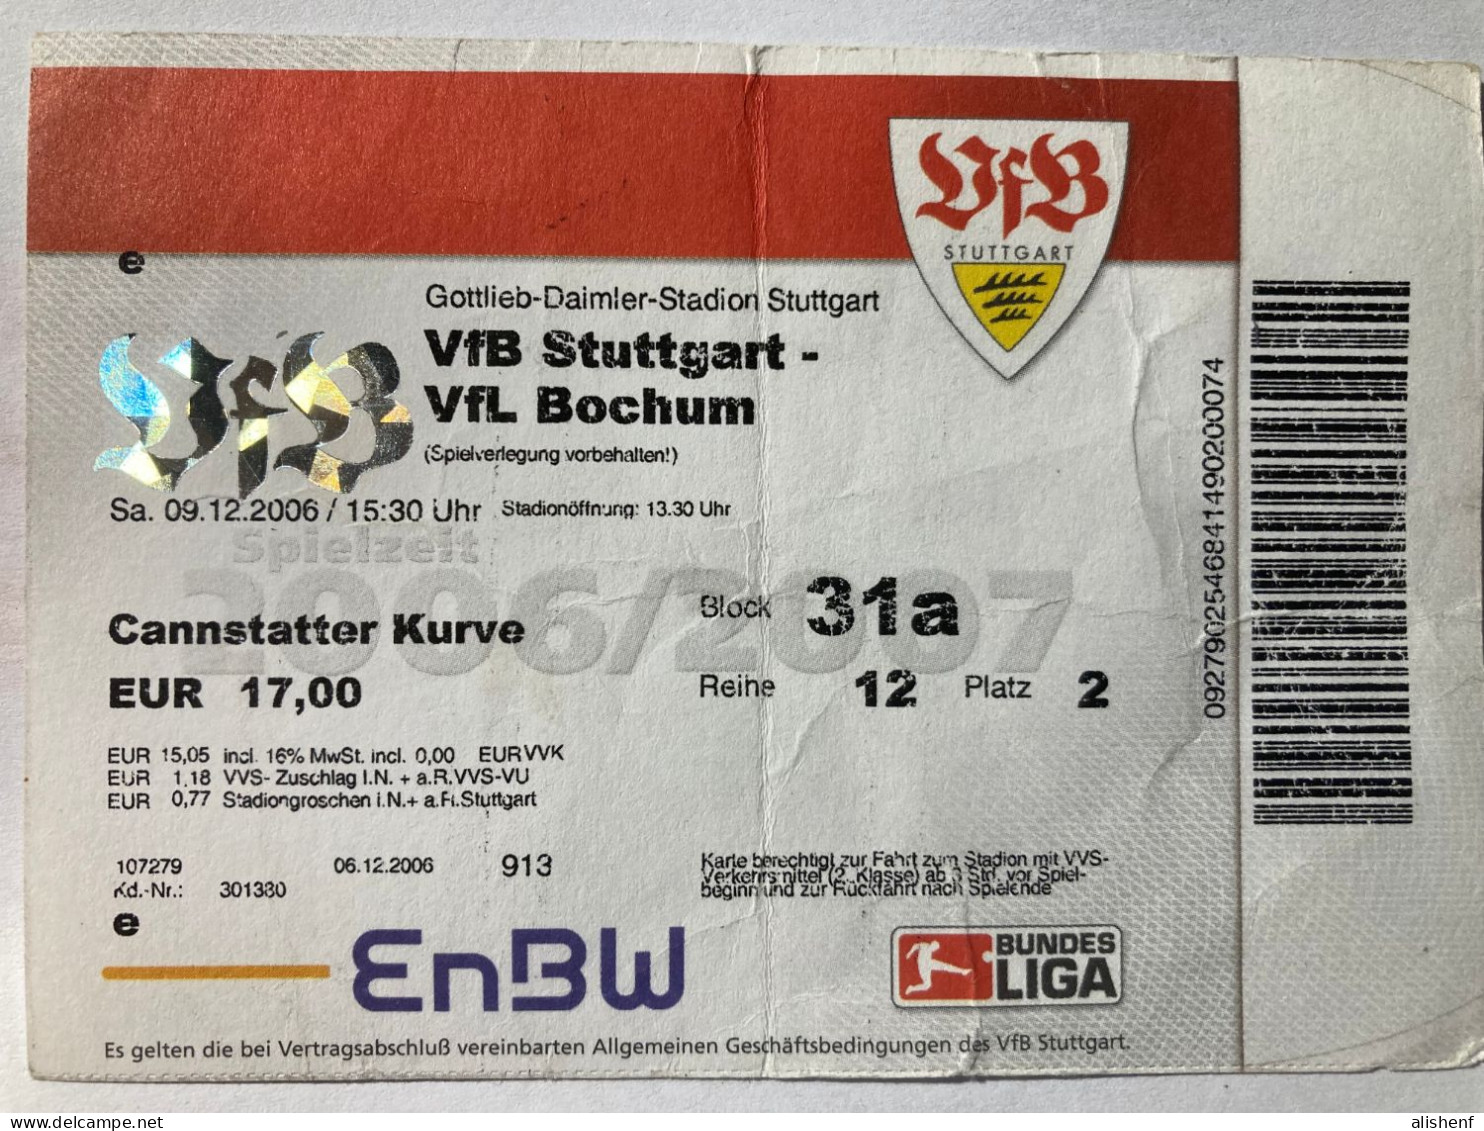 Stuttgart - Bochum Ticket Stadium Daimler Stadion Stuttgart 6.12.2006 - Tickets - Vouchers